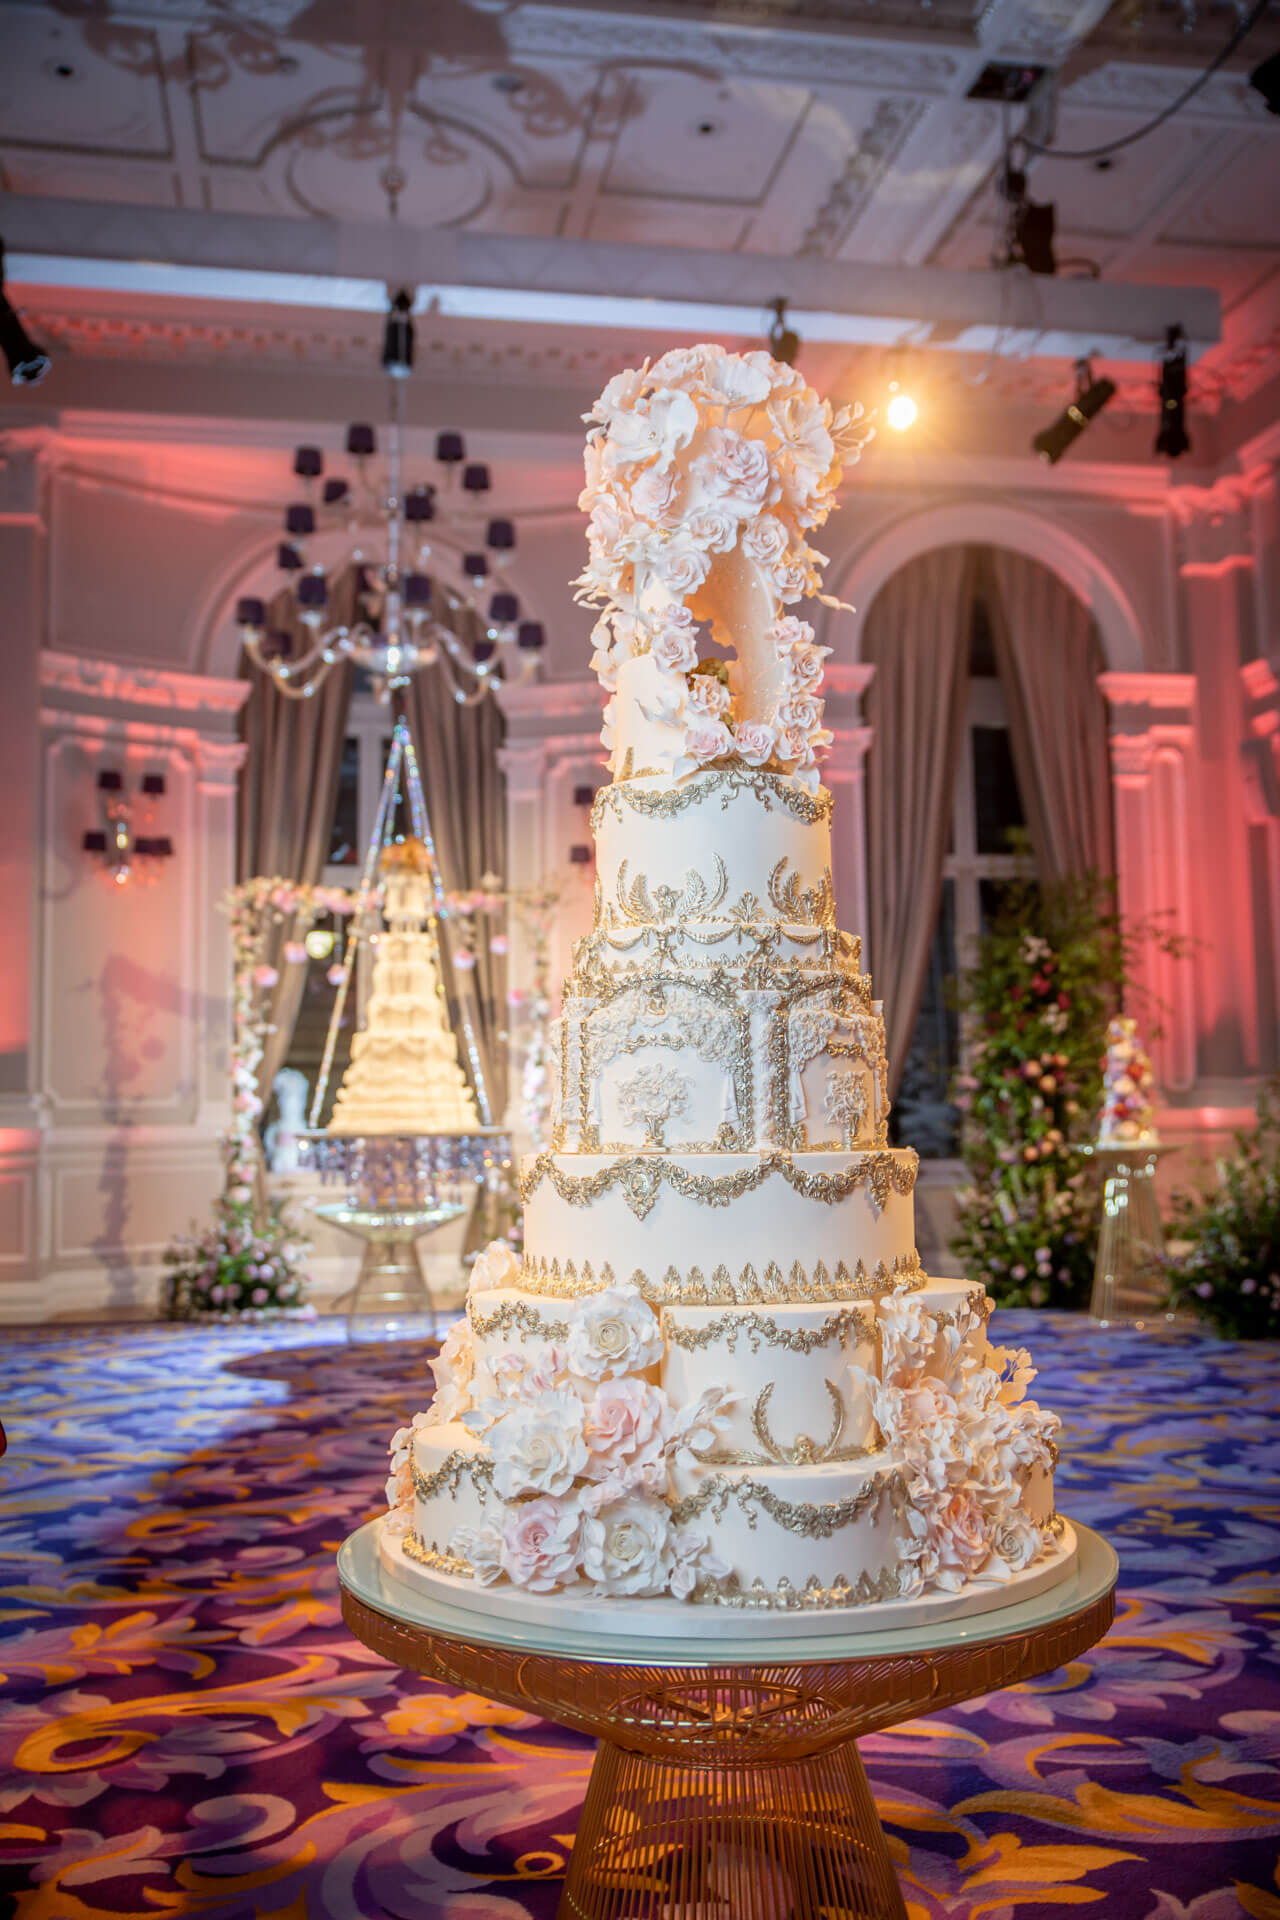 Enchanted Custom Wedding Cakes By Yevnig Anoushig Corinthia London